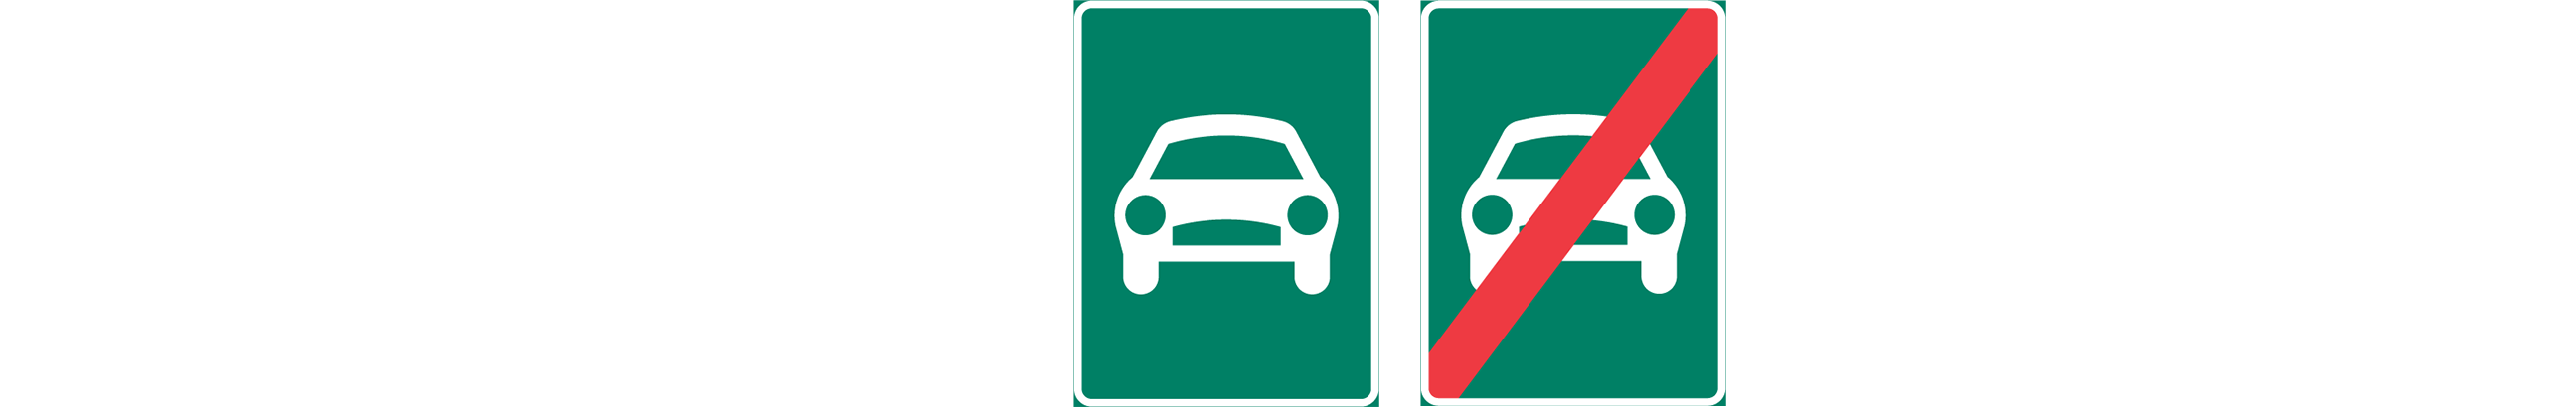 vägmärken för motortrafikled och motortrafikled upphör